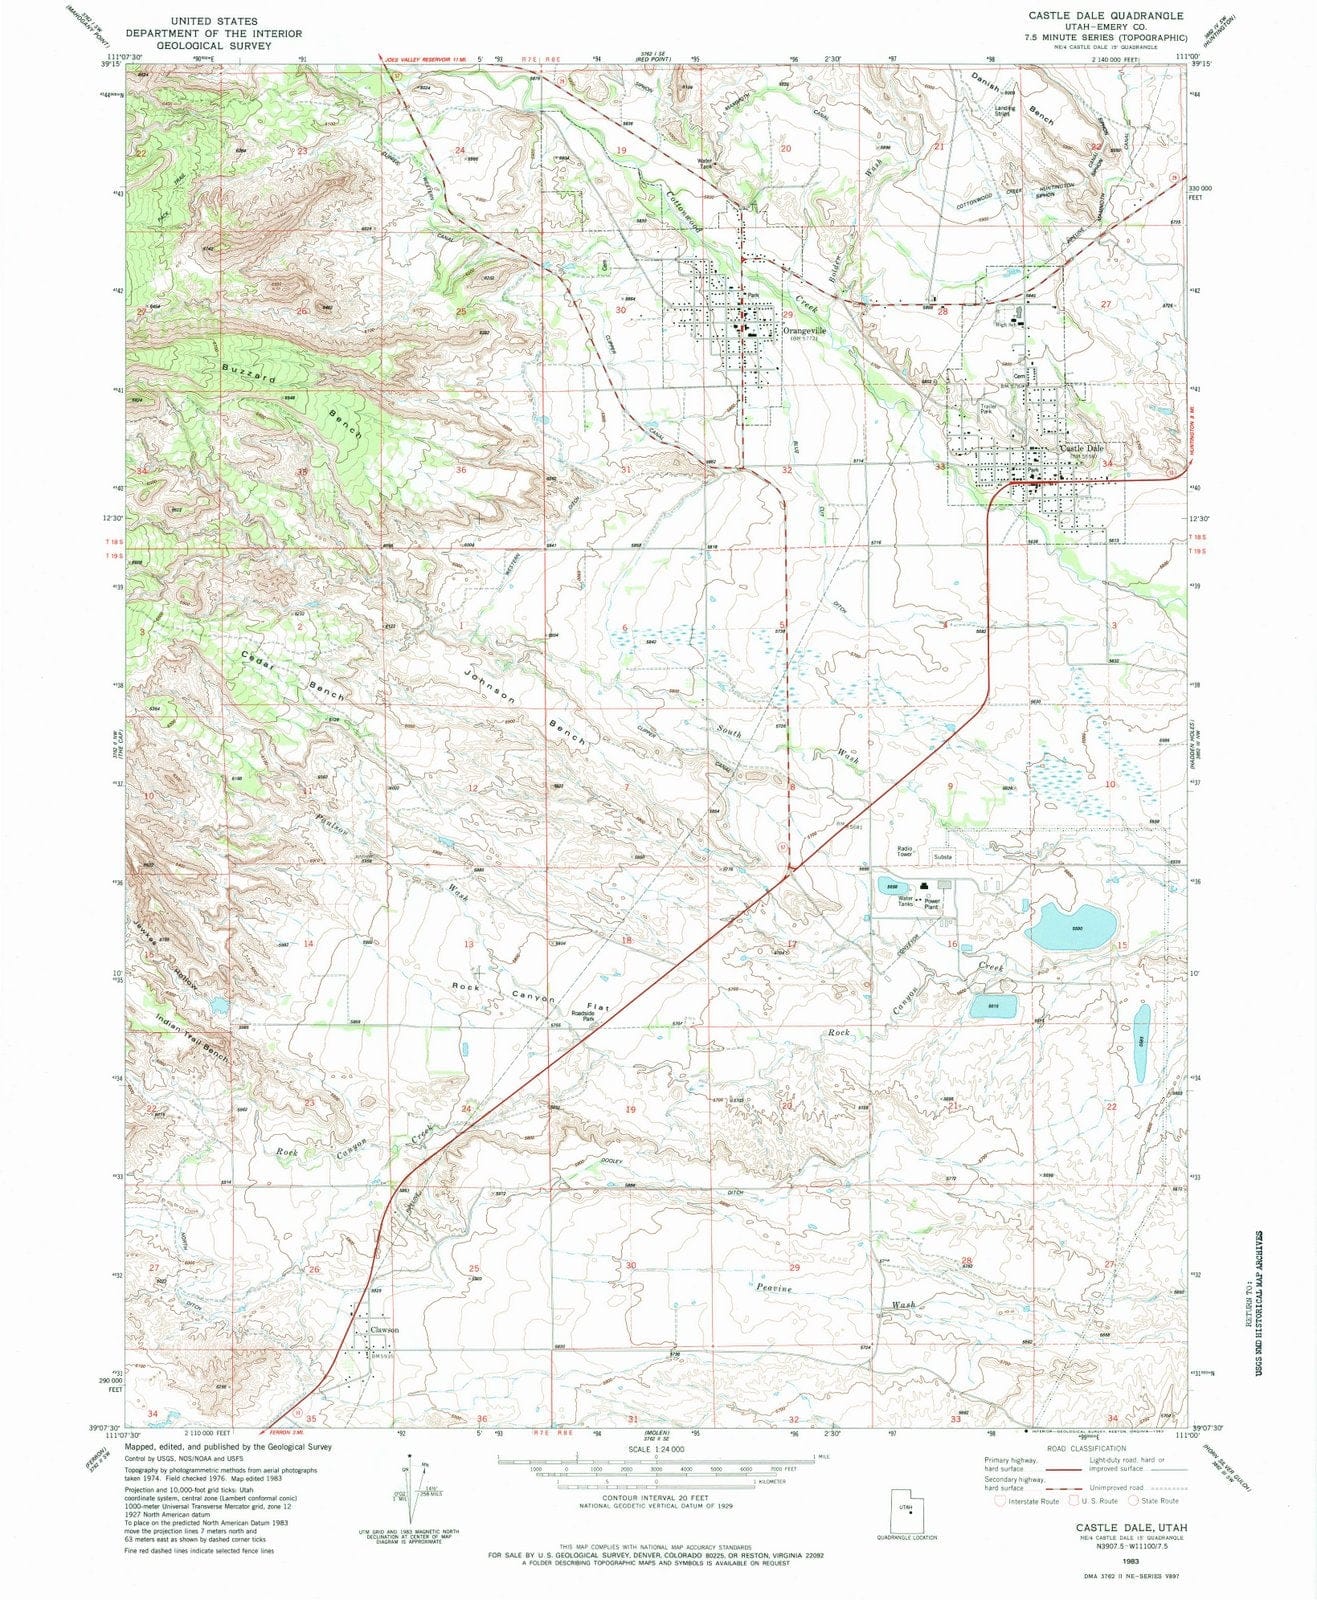 1983 Castleale, UT - Utah - USGS Topographic Map